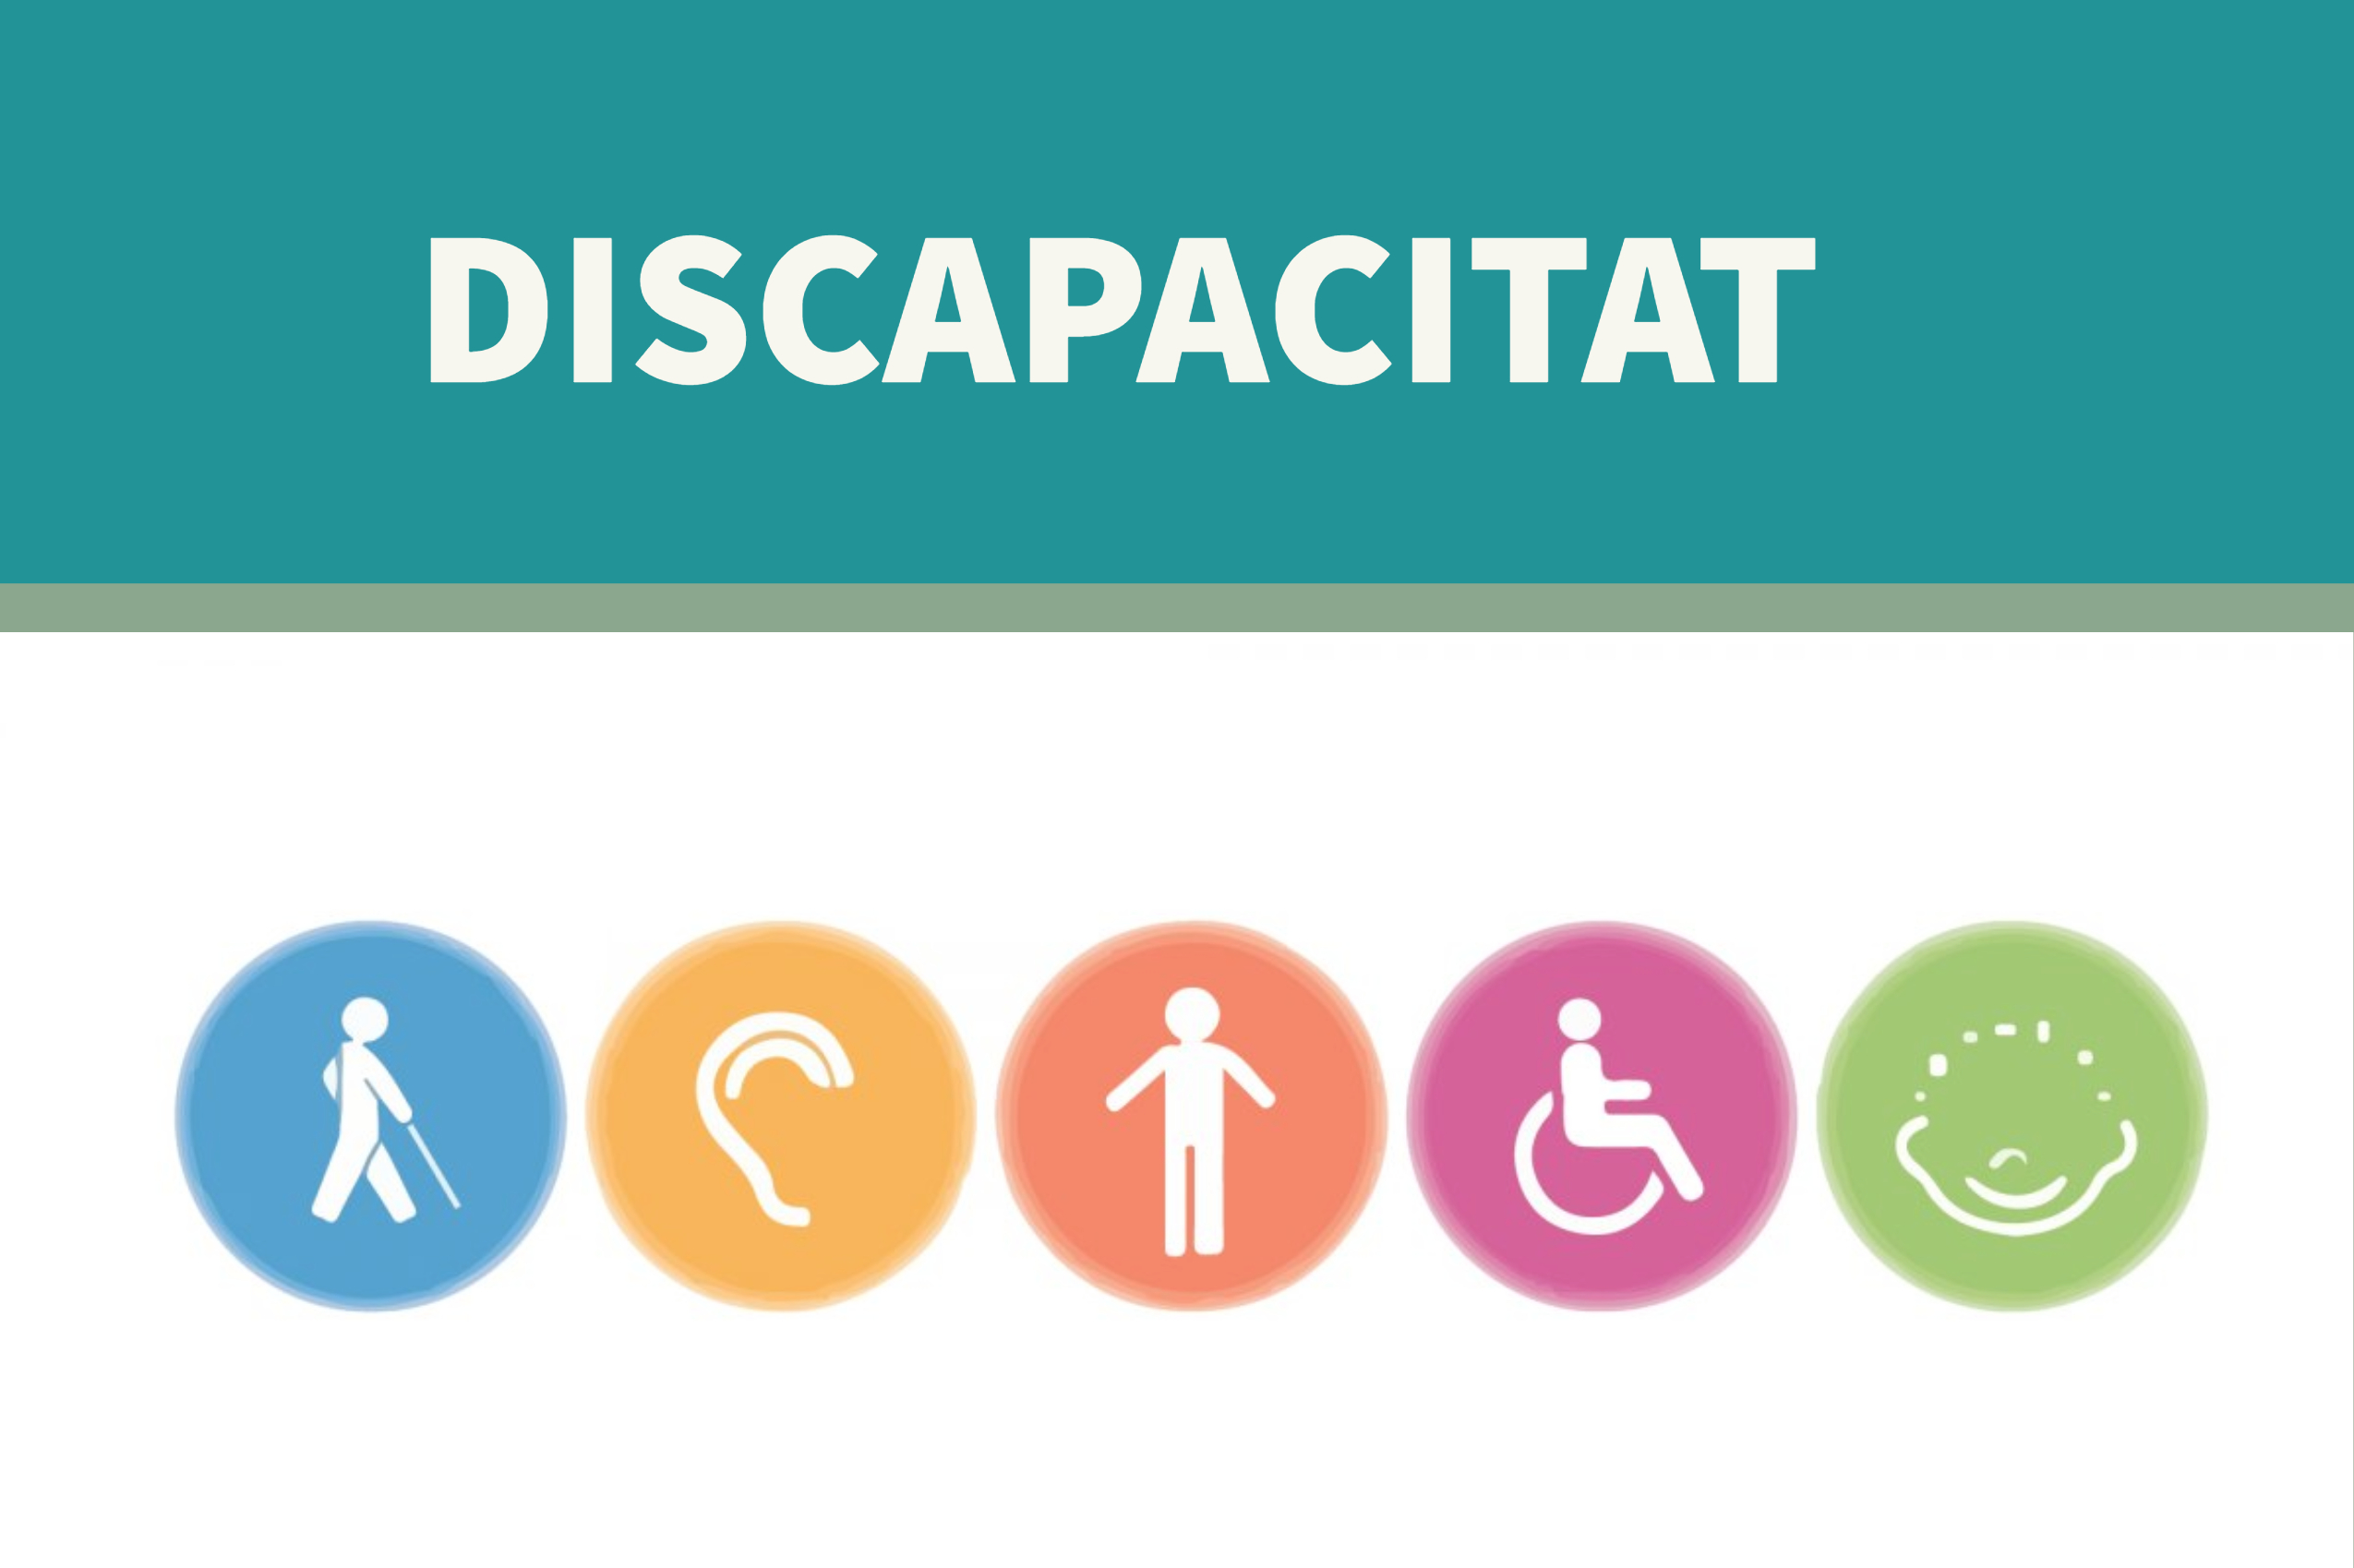 Obrim una queixa d’ofici per les demores generalitzades en el reconeixement de la discapacitat